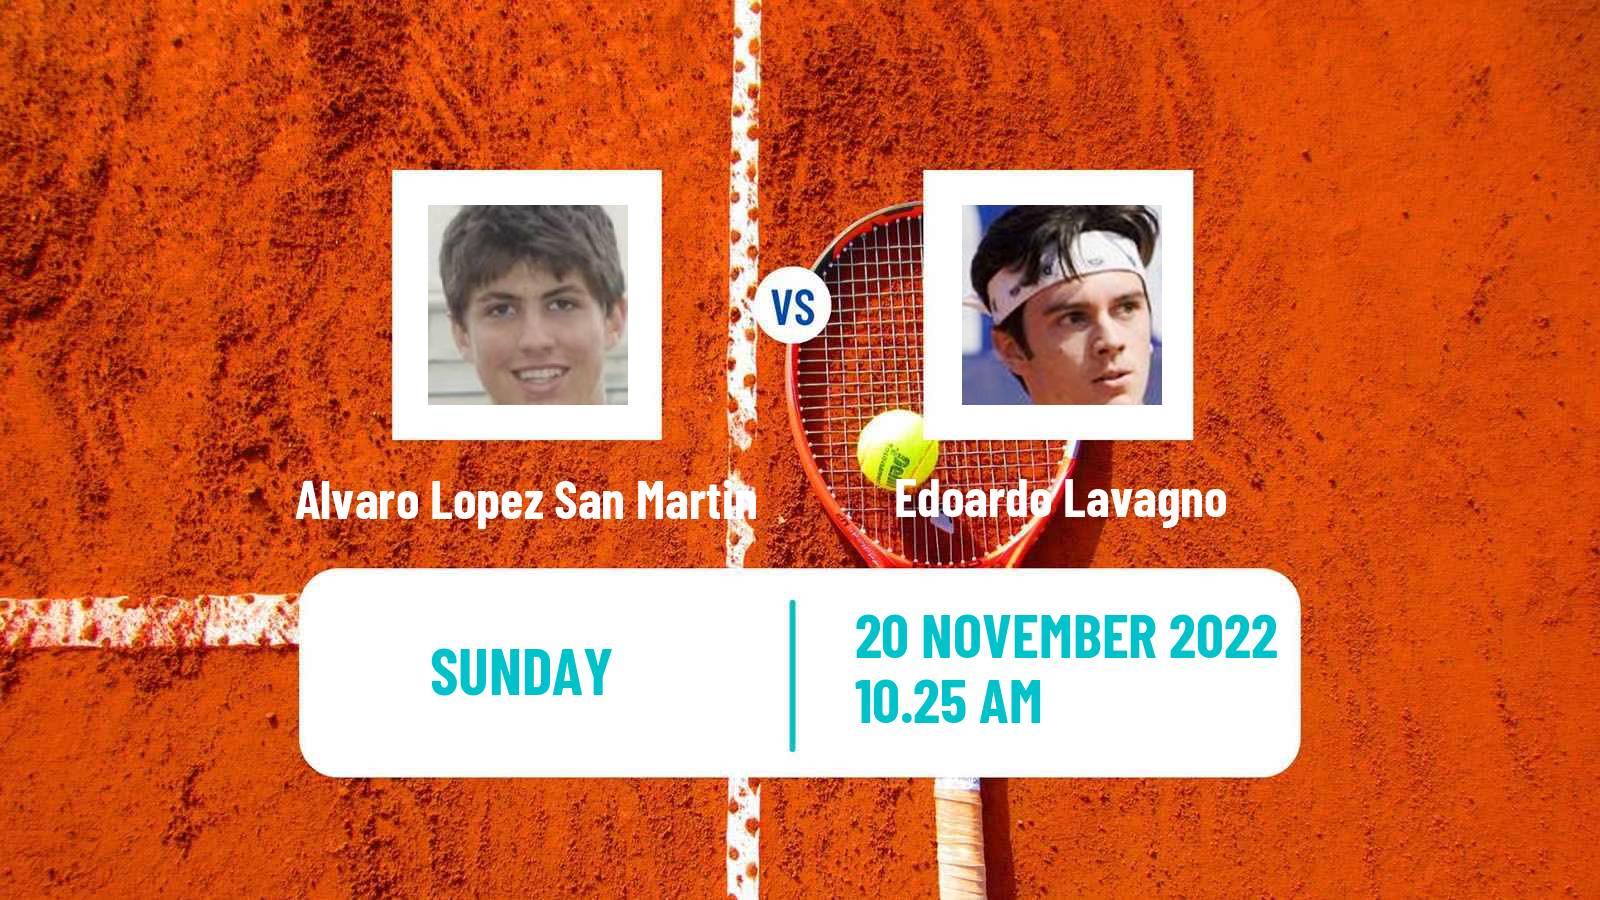 Tennis ATP Challenger Alvaro Lopez San Martin - Edoardo Lavagno